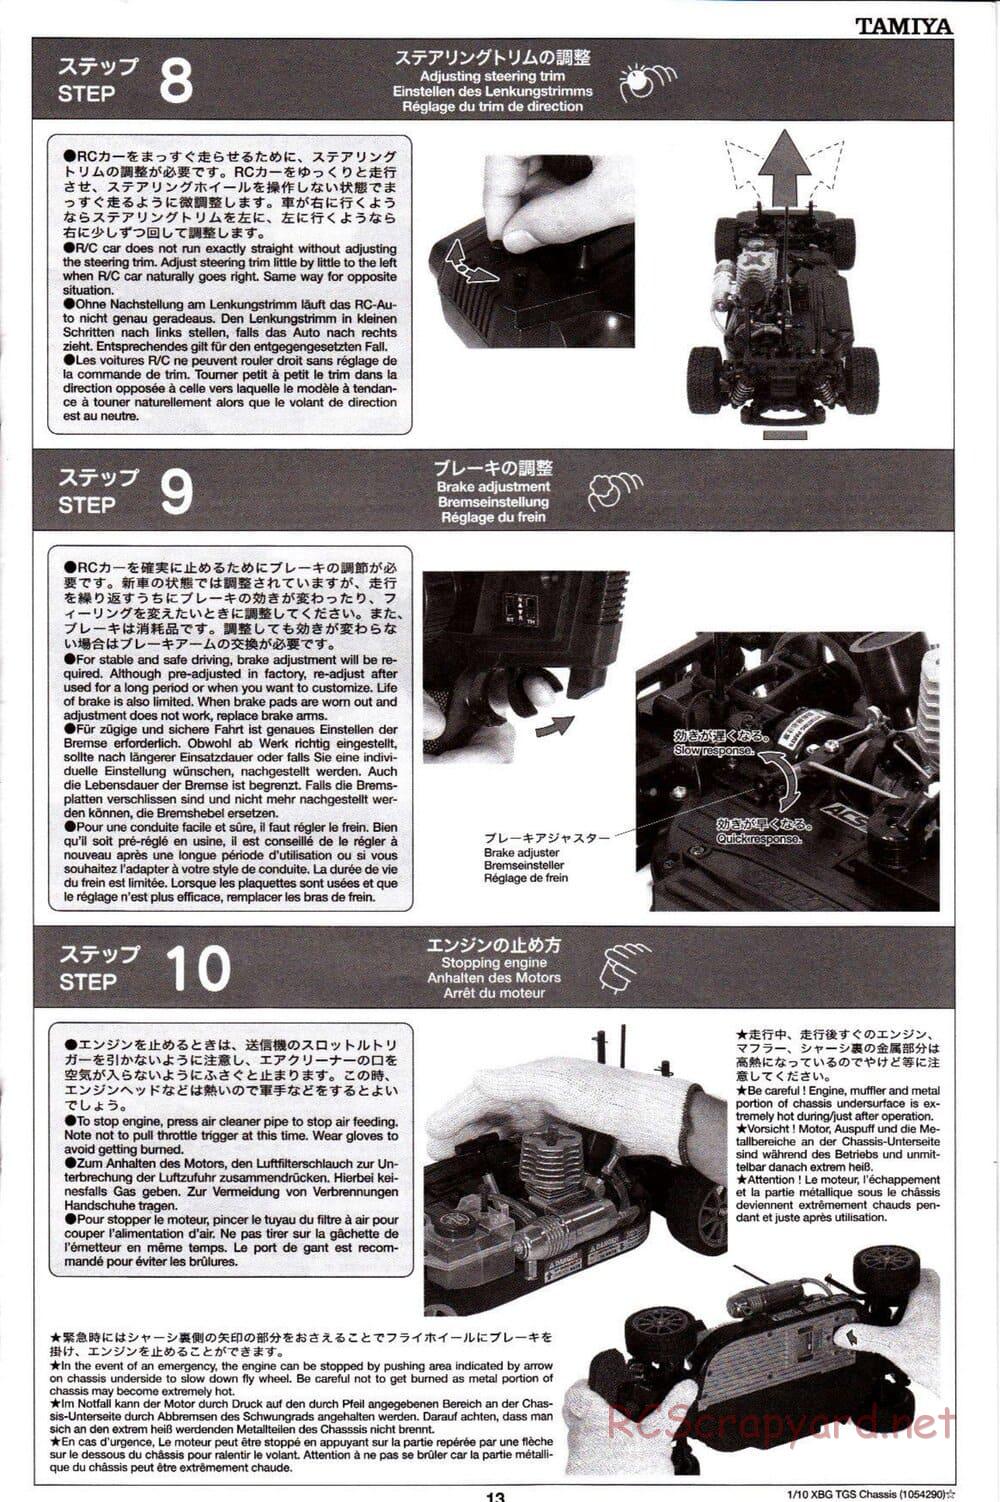 Tamiya - TGS Chassis - Manual - Page 13